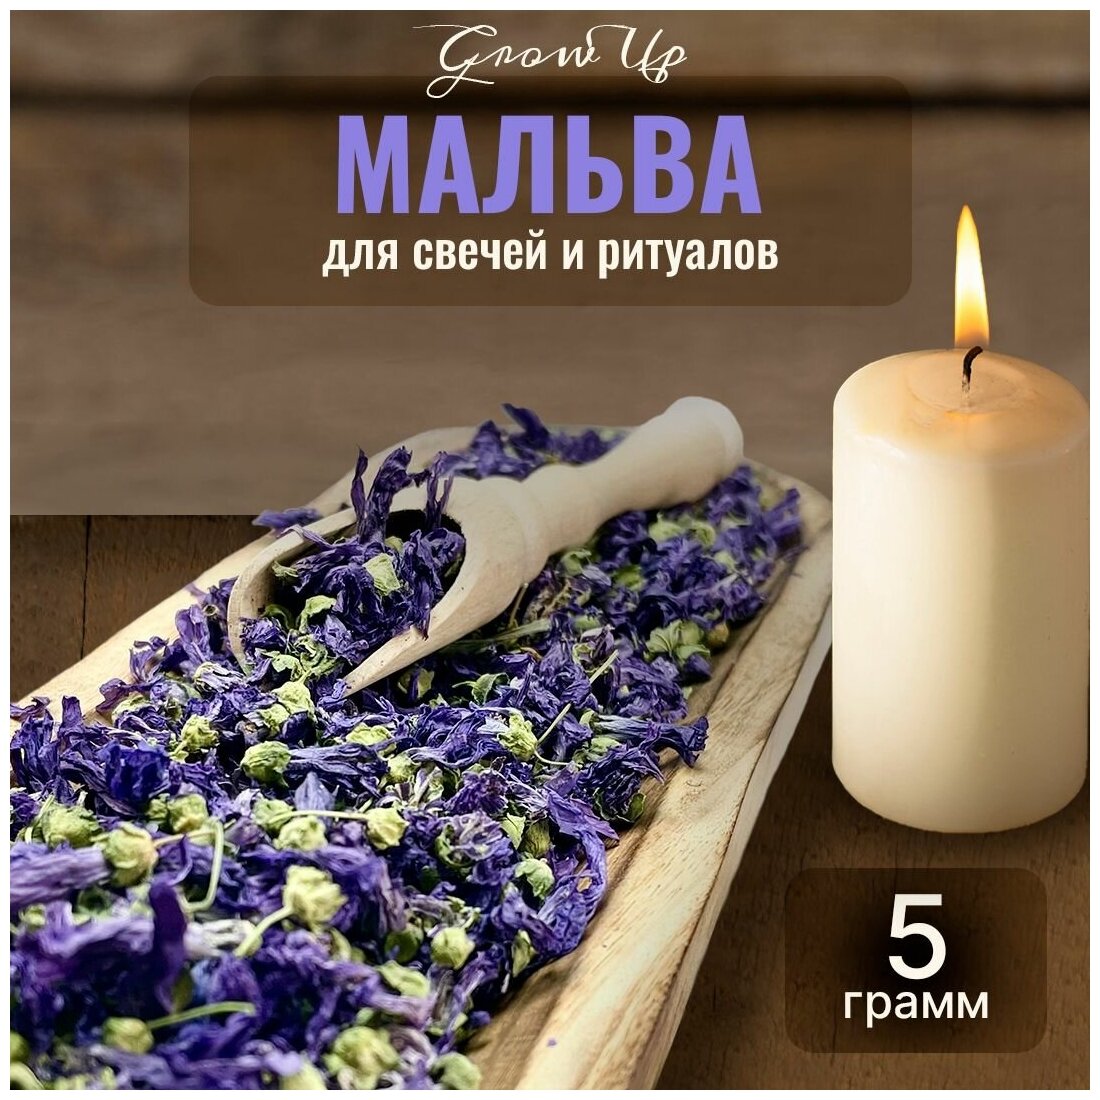 Сухая трава Мальва (цветы) для свечей и ритуалов, 5 гр